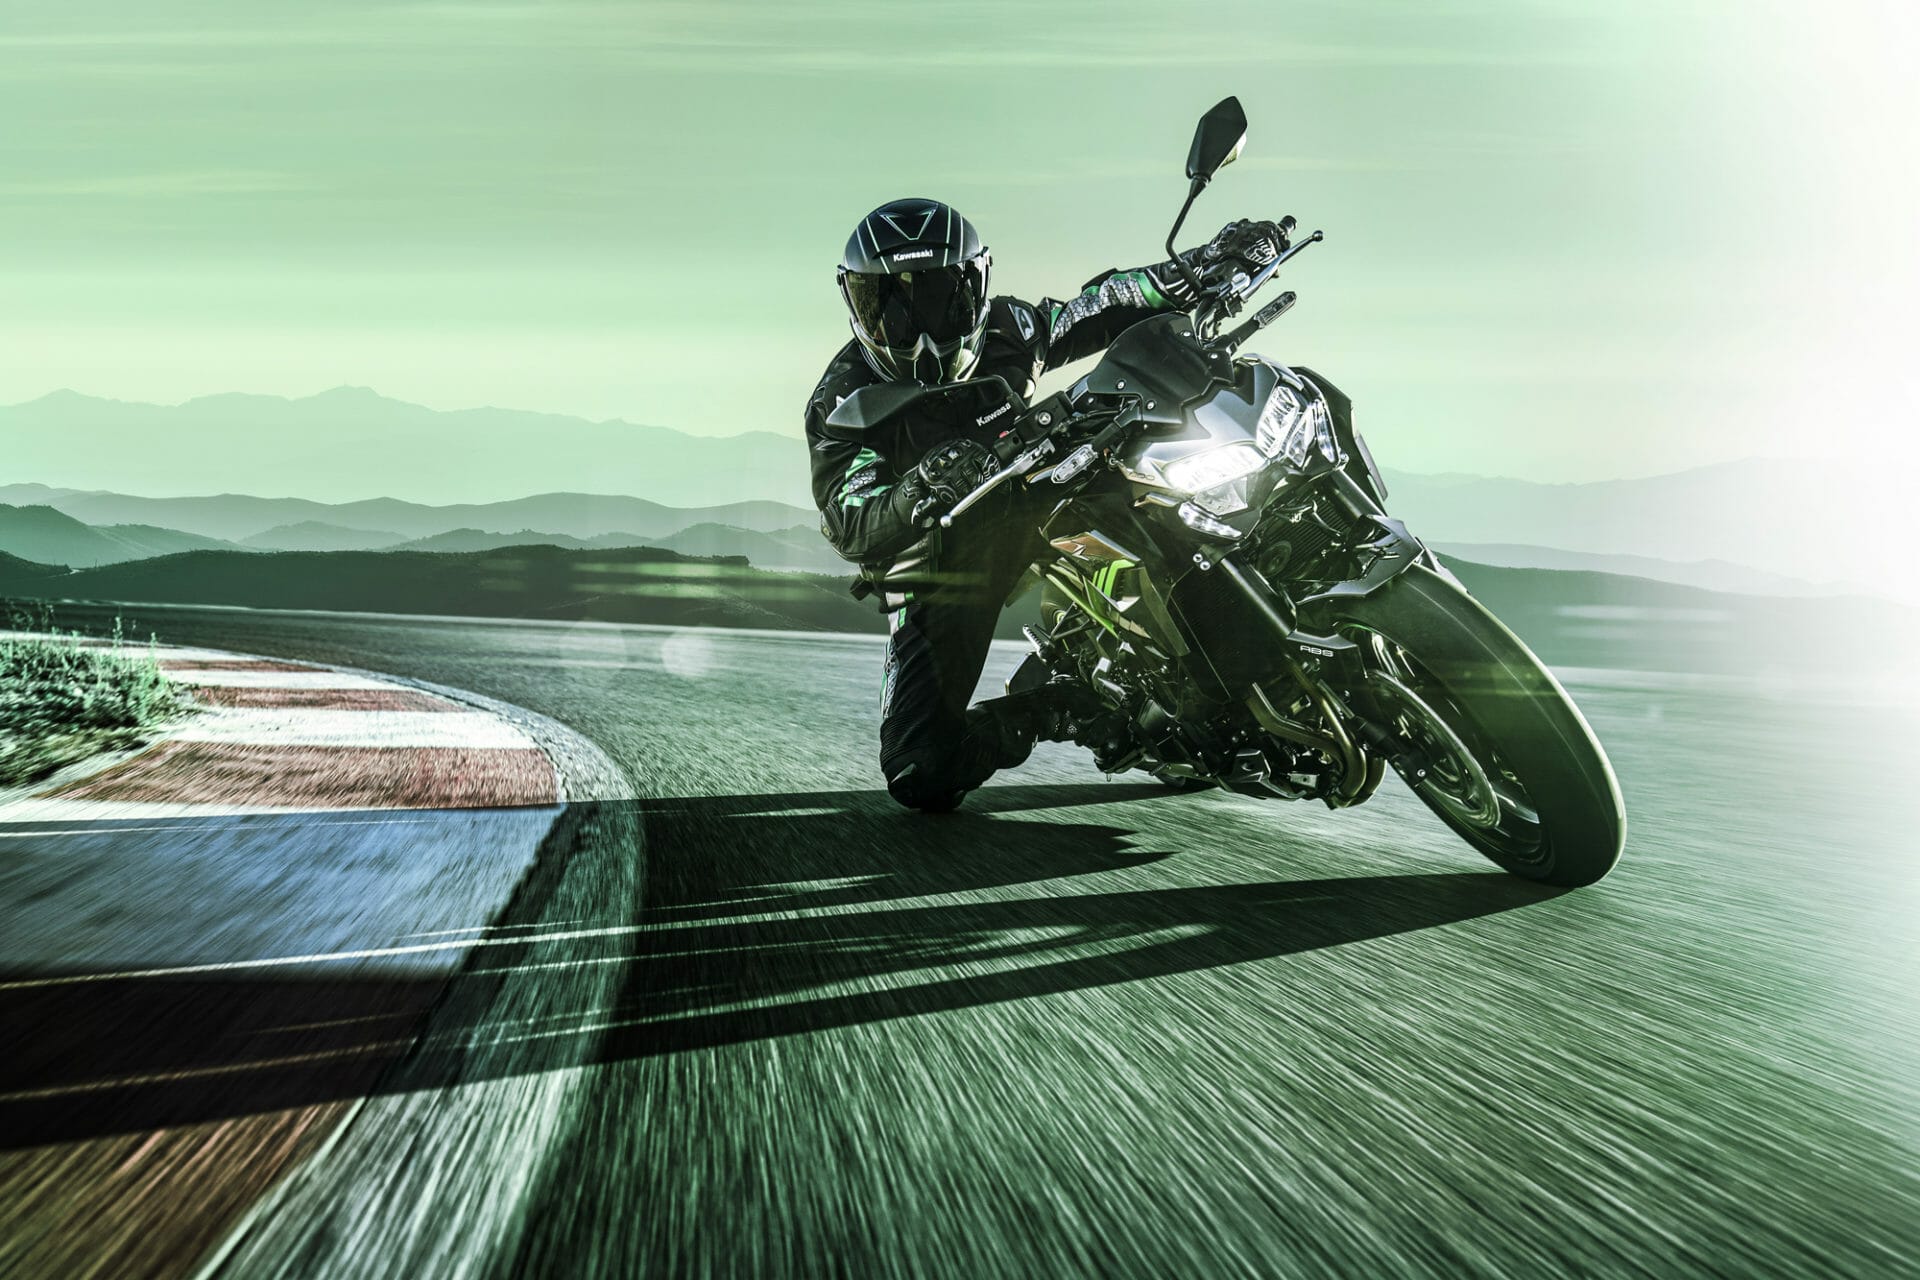 #Kawasaki Updates für #Z900 und #Z650
- auch in der Motorrad Nachrichten App